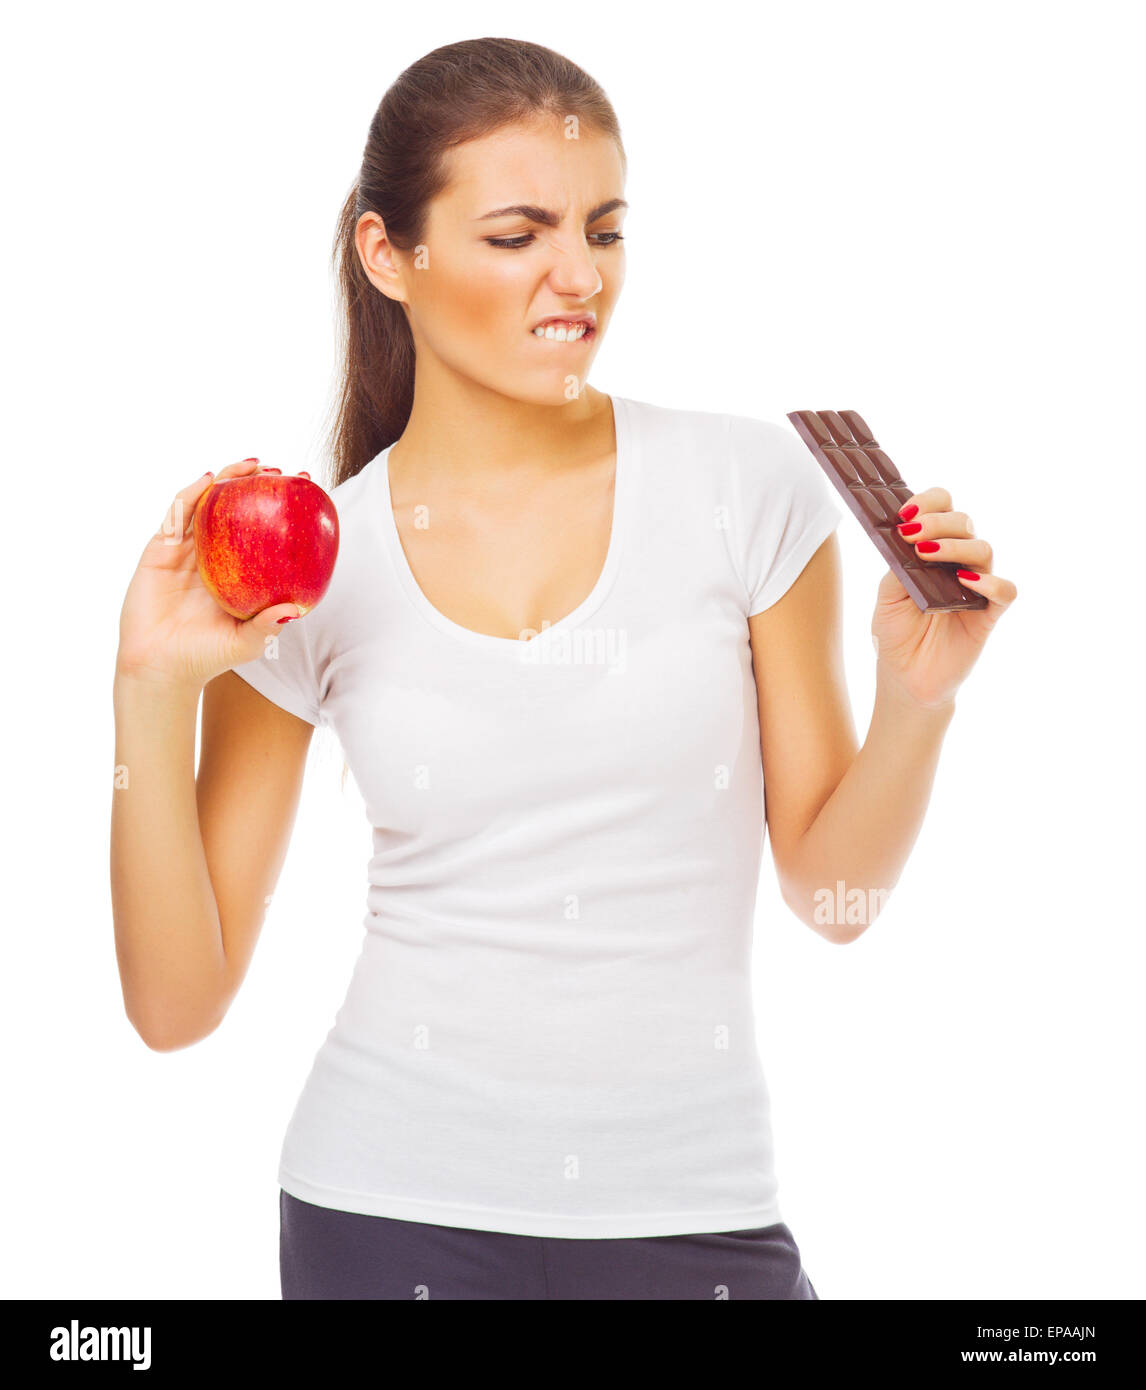 Jeune fille doutant avec apple et isolé au chocolat Banque D'Images